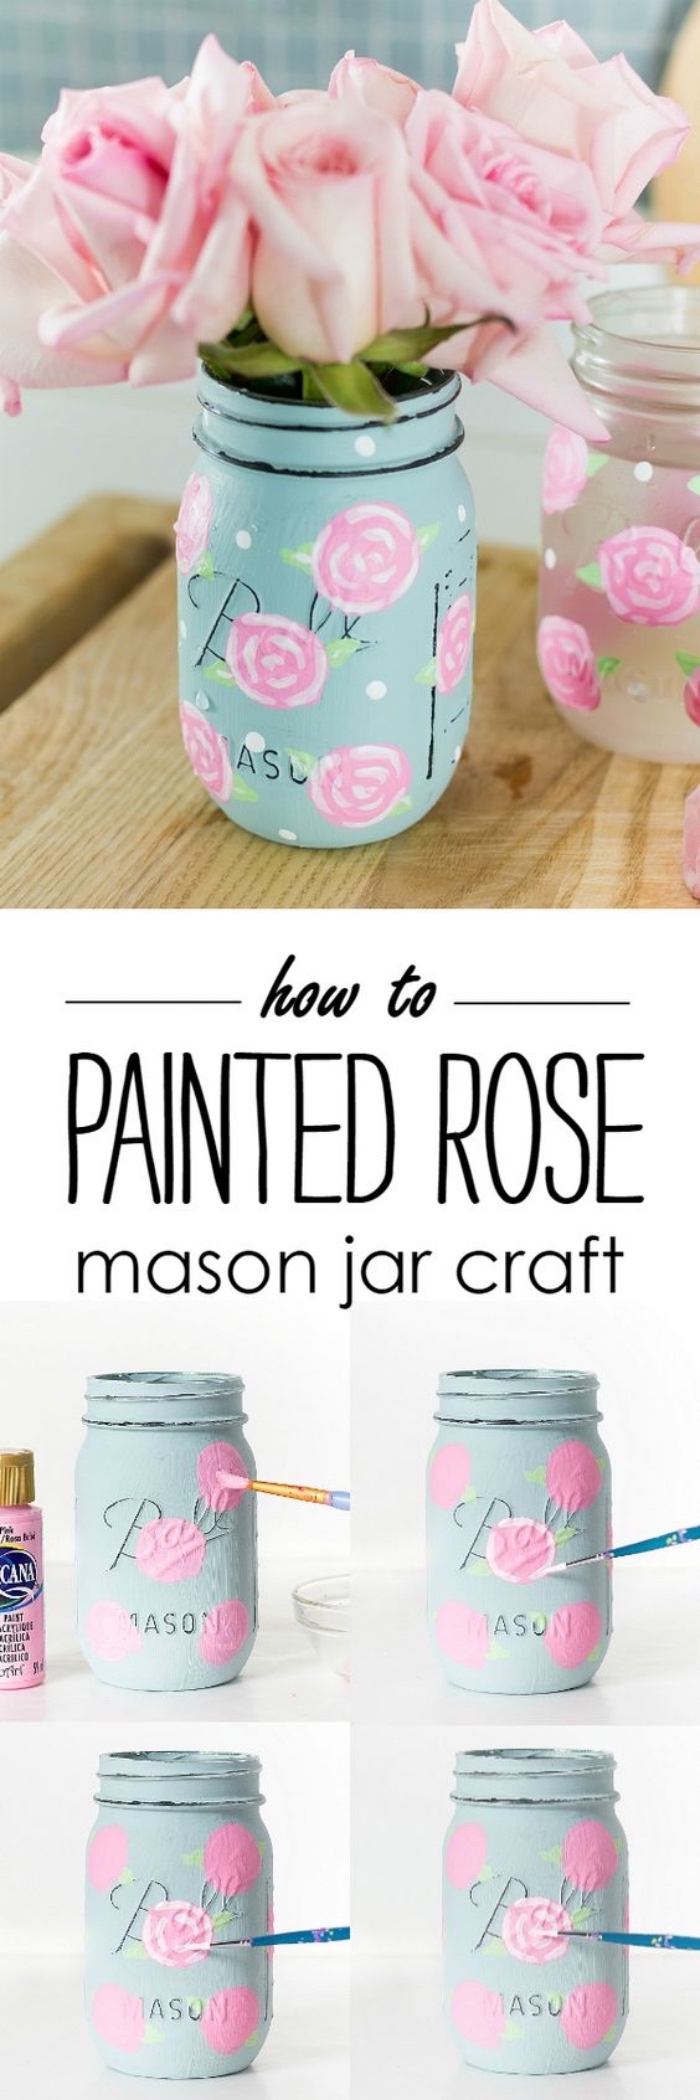 exemple de deco fait maison simple, un pot en verre, repeint de peinture bleu pastel et roses dessinés à la main, bouquet de roses